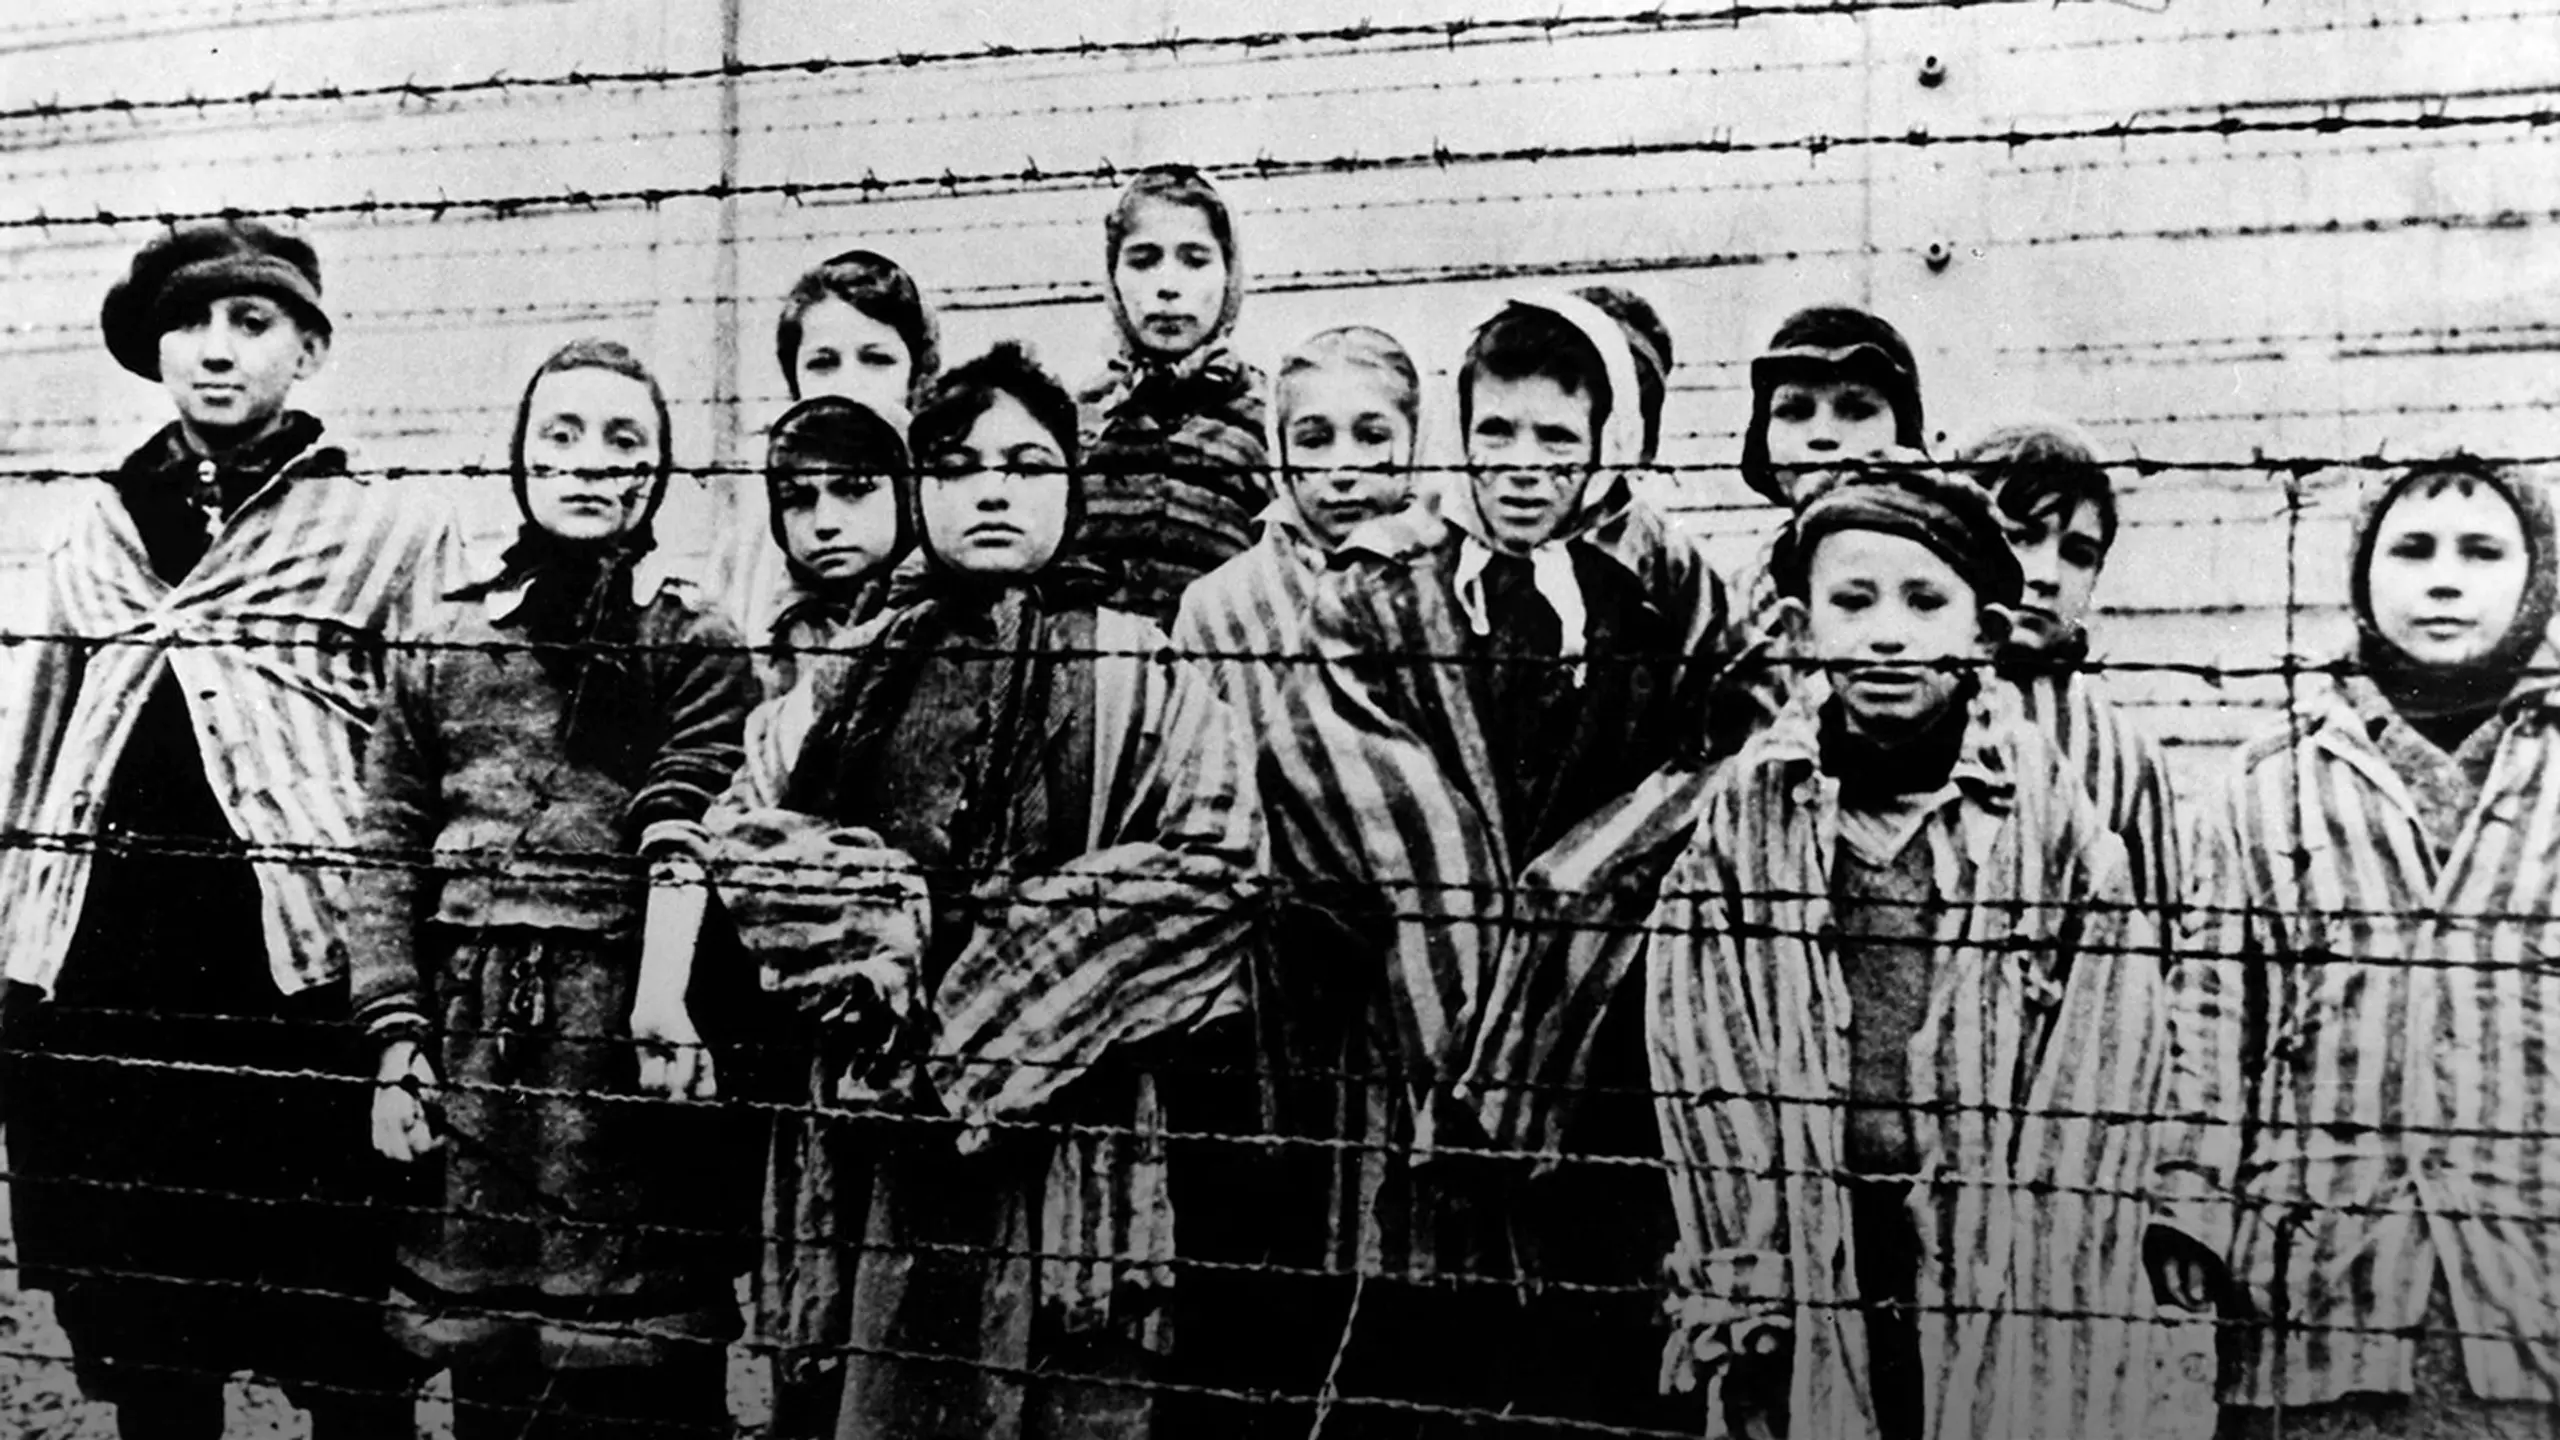 Die Wahrheit über den Holocaust